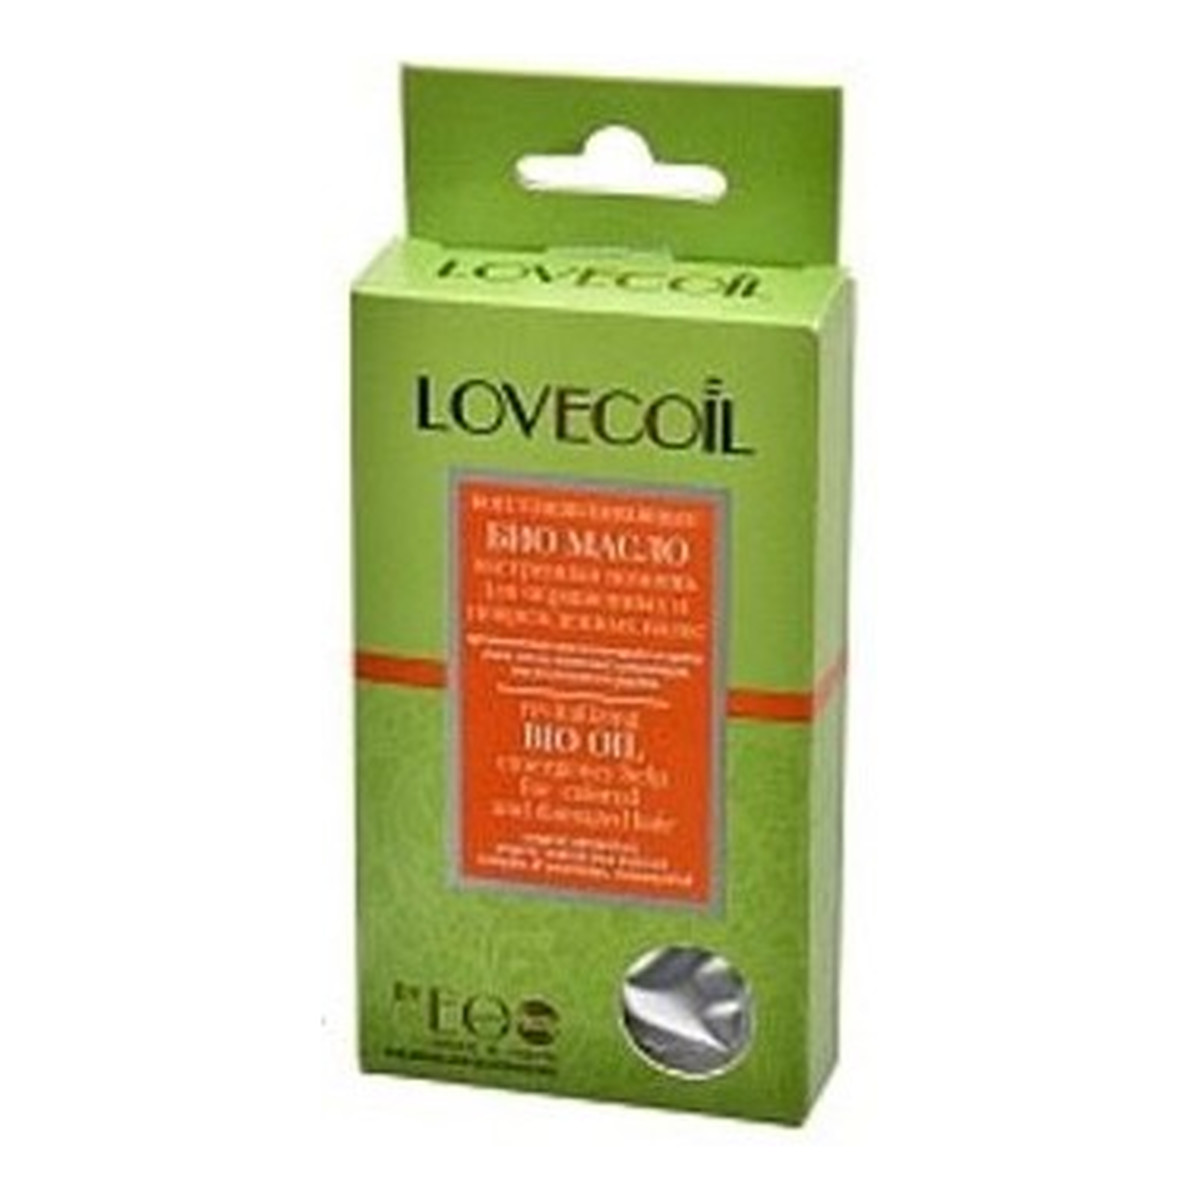 LovECoil by EO LABORATORIE- olejowy biokompleks – rewitalizujący- natychmiastowa pomoc dla włosów farbowanych i zniszczonych- organiczny olej ze słodkich migdałów, organiczny olej inca inchi, olejek z drzewa różanego, kompleks ceramidów, witamina E 45ml